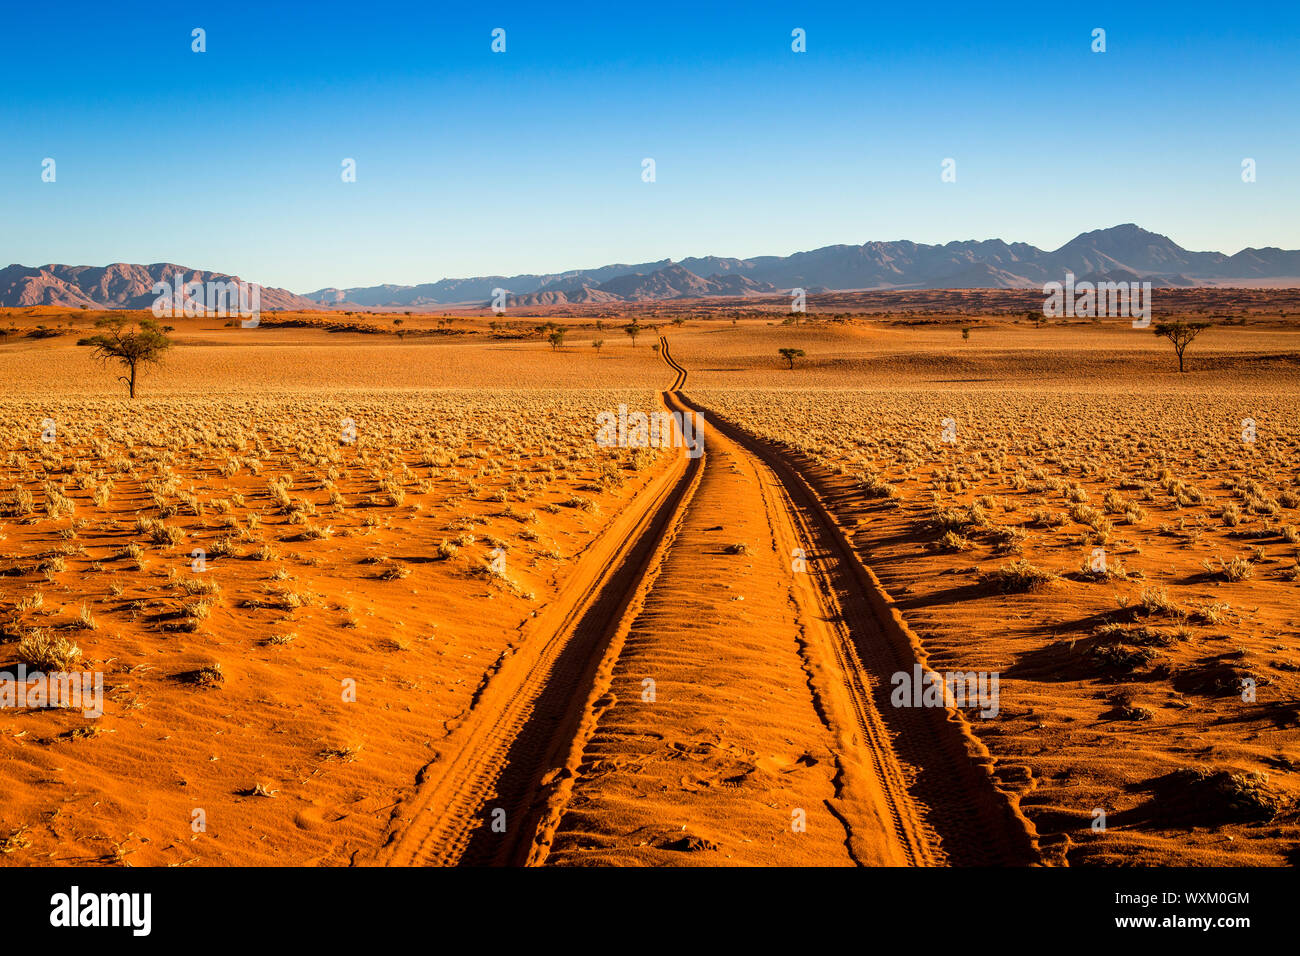 Sandtrack in Namibia deserto Foto Stock